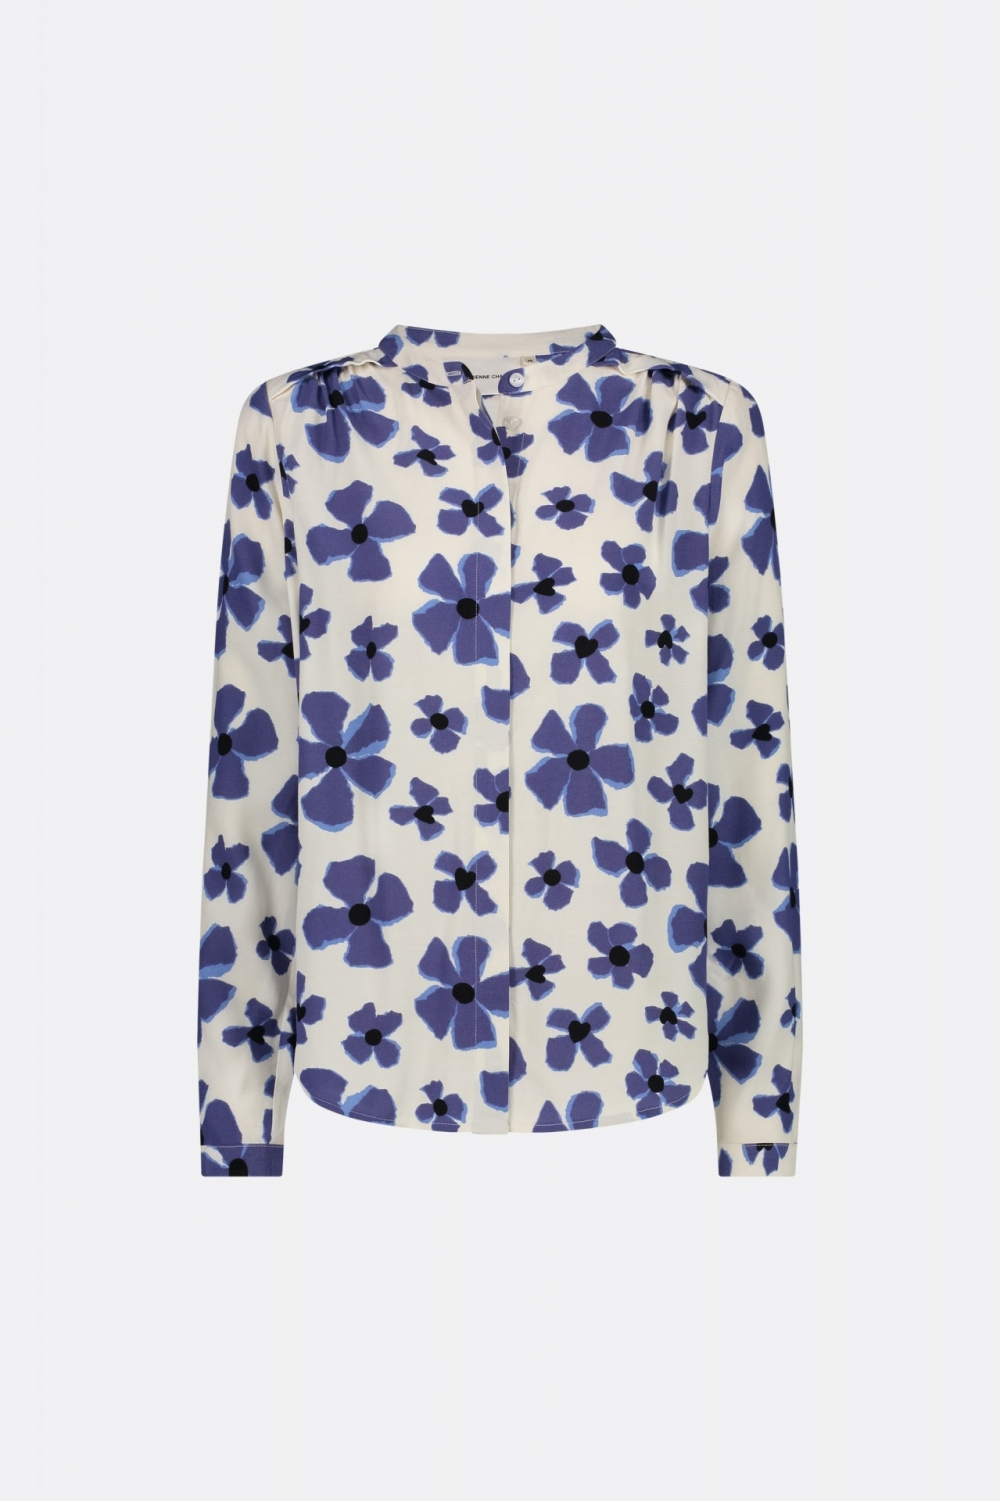 Stilig bluse fra Fabienne Chapot med blomsterprint i blåtoner. Blusen har en avslappet passform, rund hals og skjult knappelukking. Den er laget i en flott viskosekvalitet. 